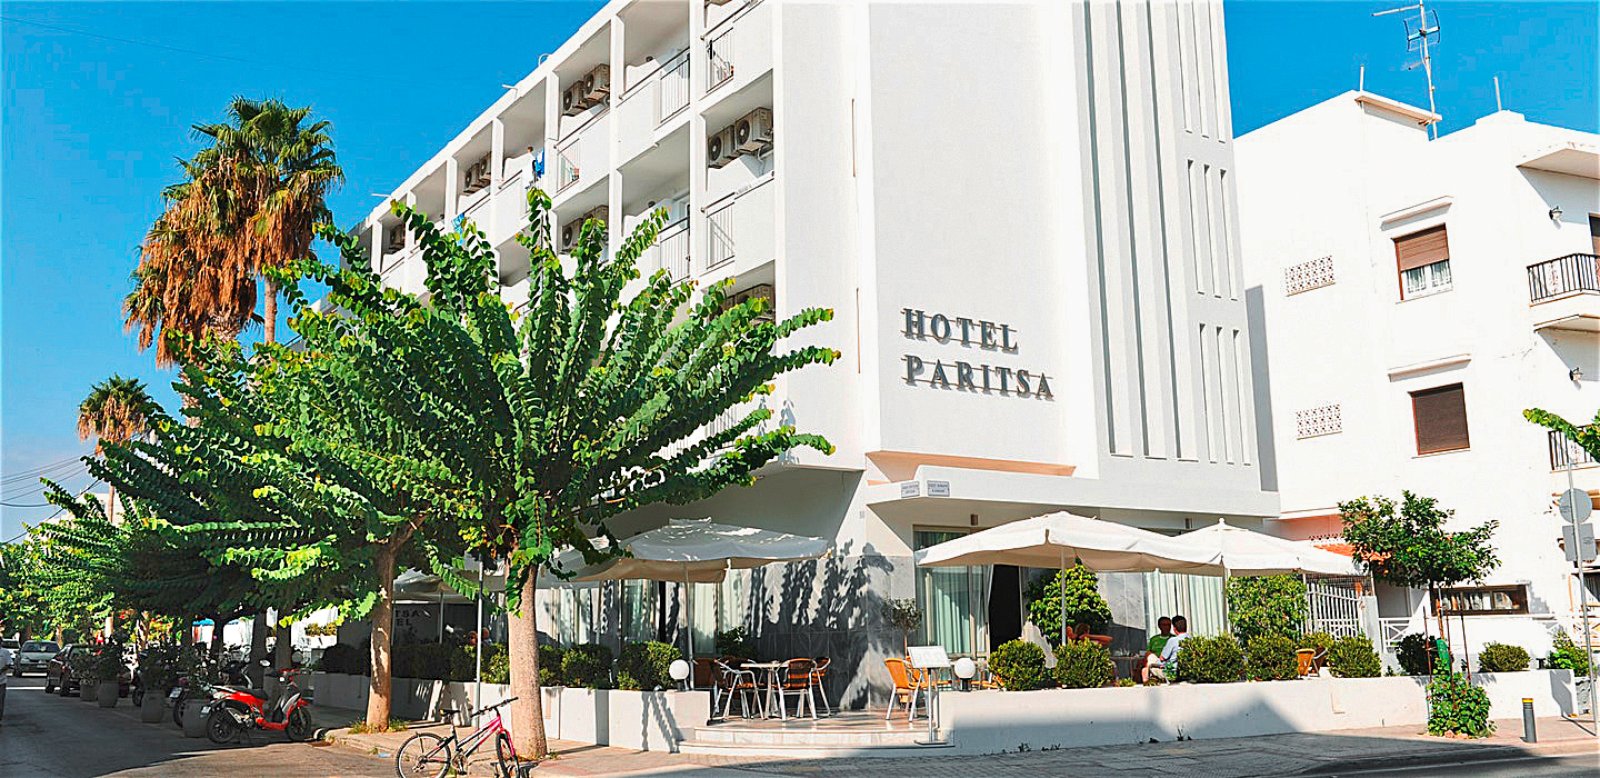 Hotel Paritsa